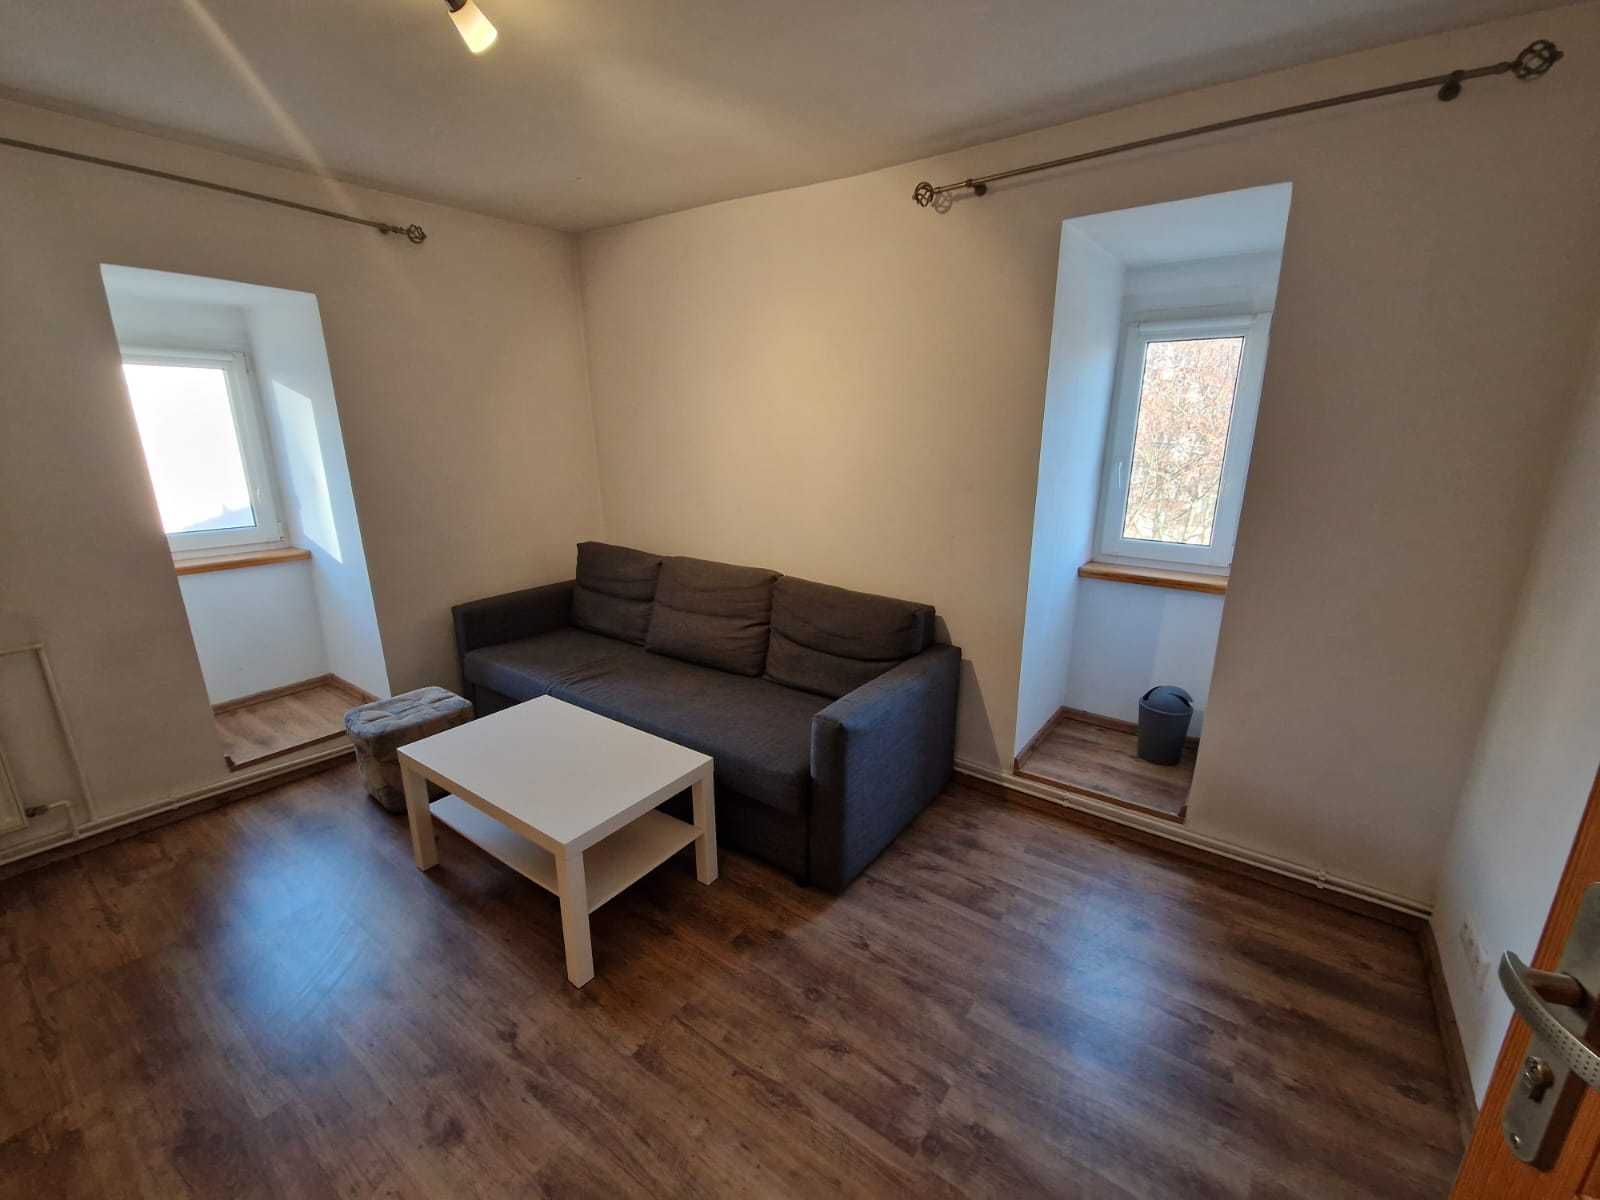 Mieszkanie 2 pokoje do wynajęcia w centrum Oleśnicy